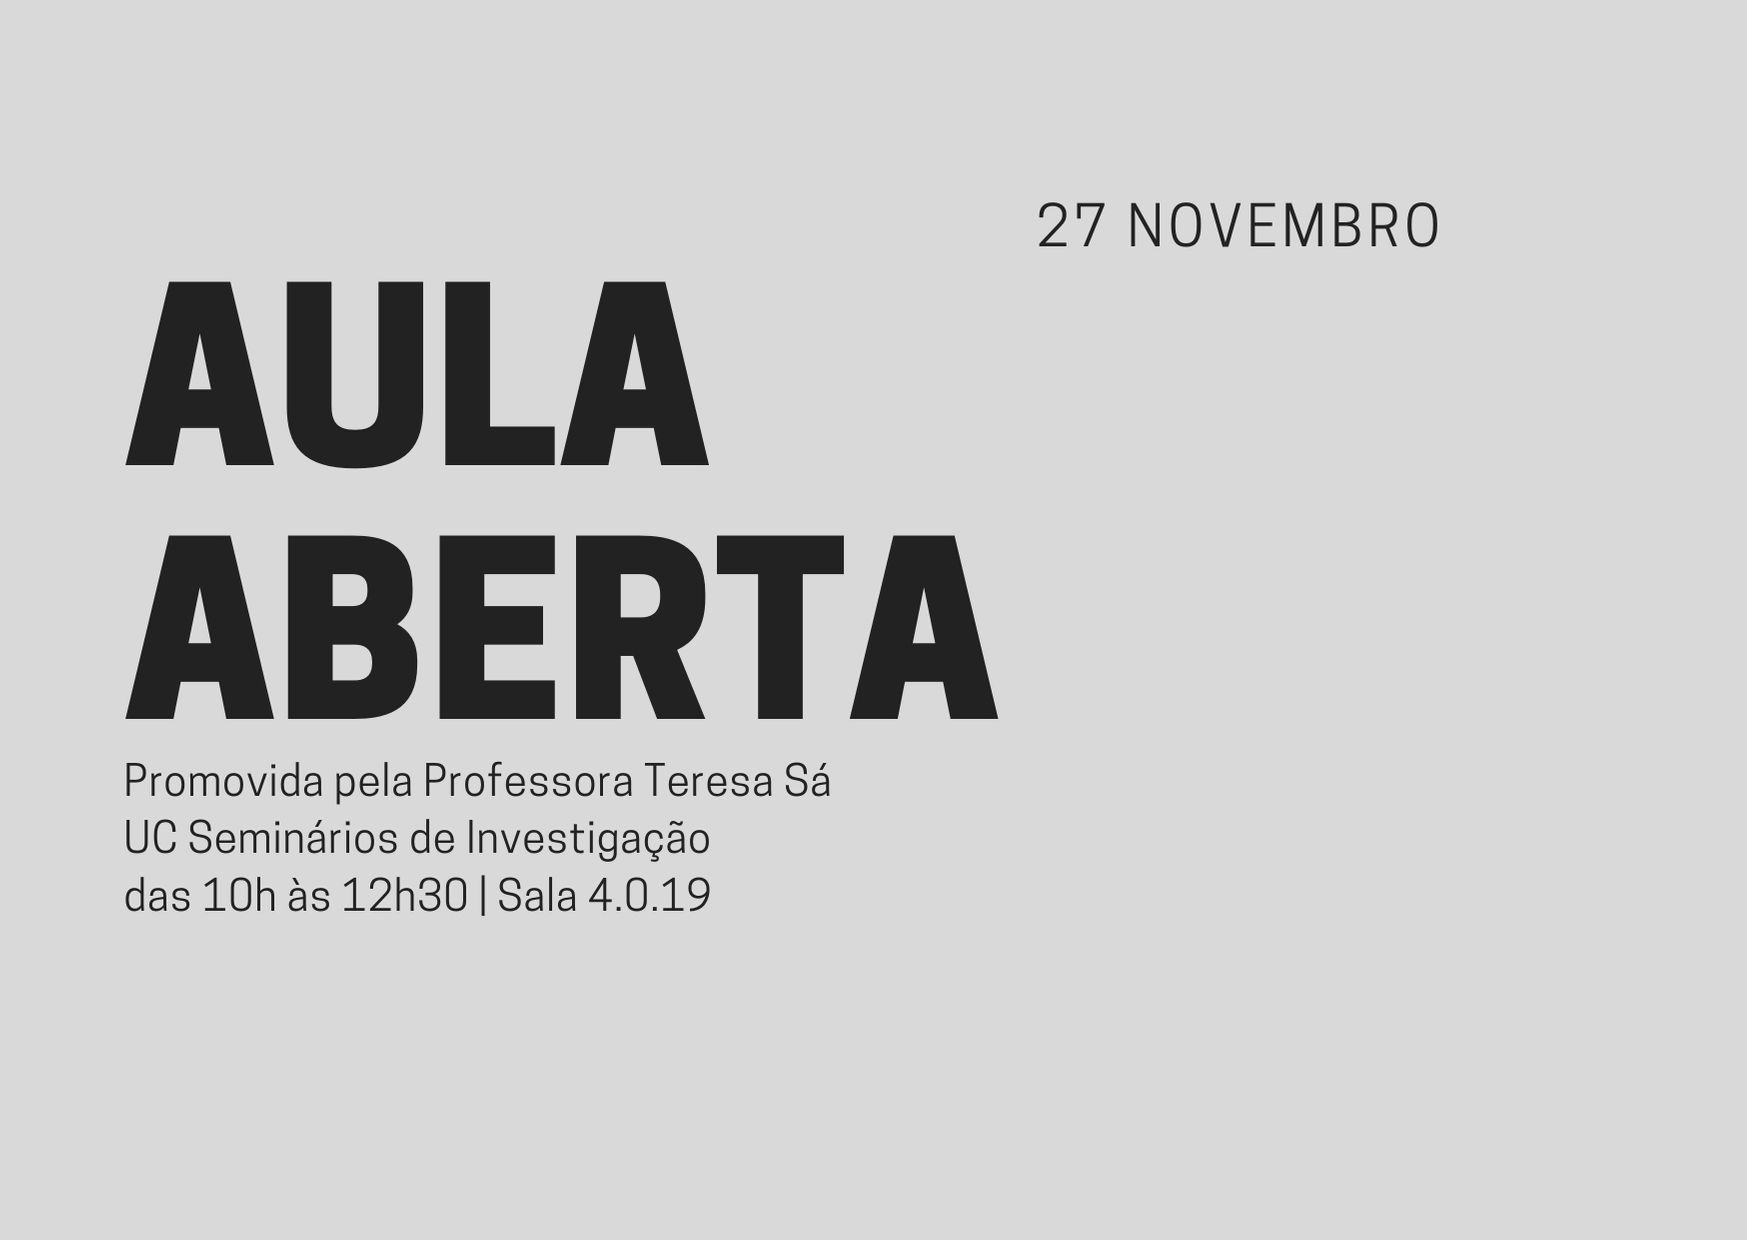 Aula Aberta - UC Seminários de Investigação do curso de arquitectura, turma F - Promovida pela Professora Teresa Sá